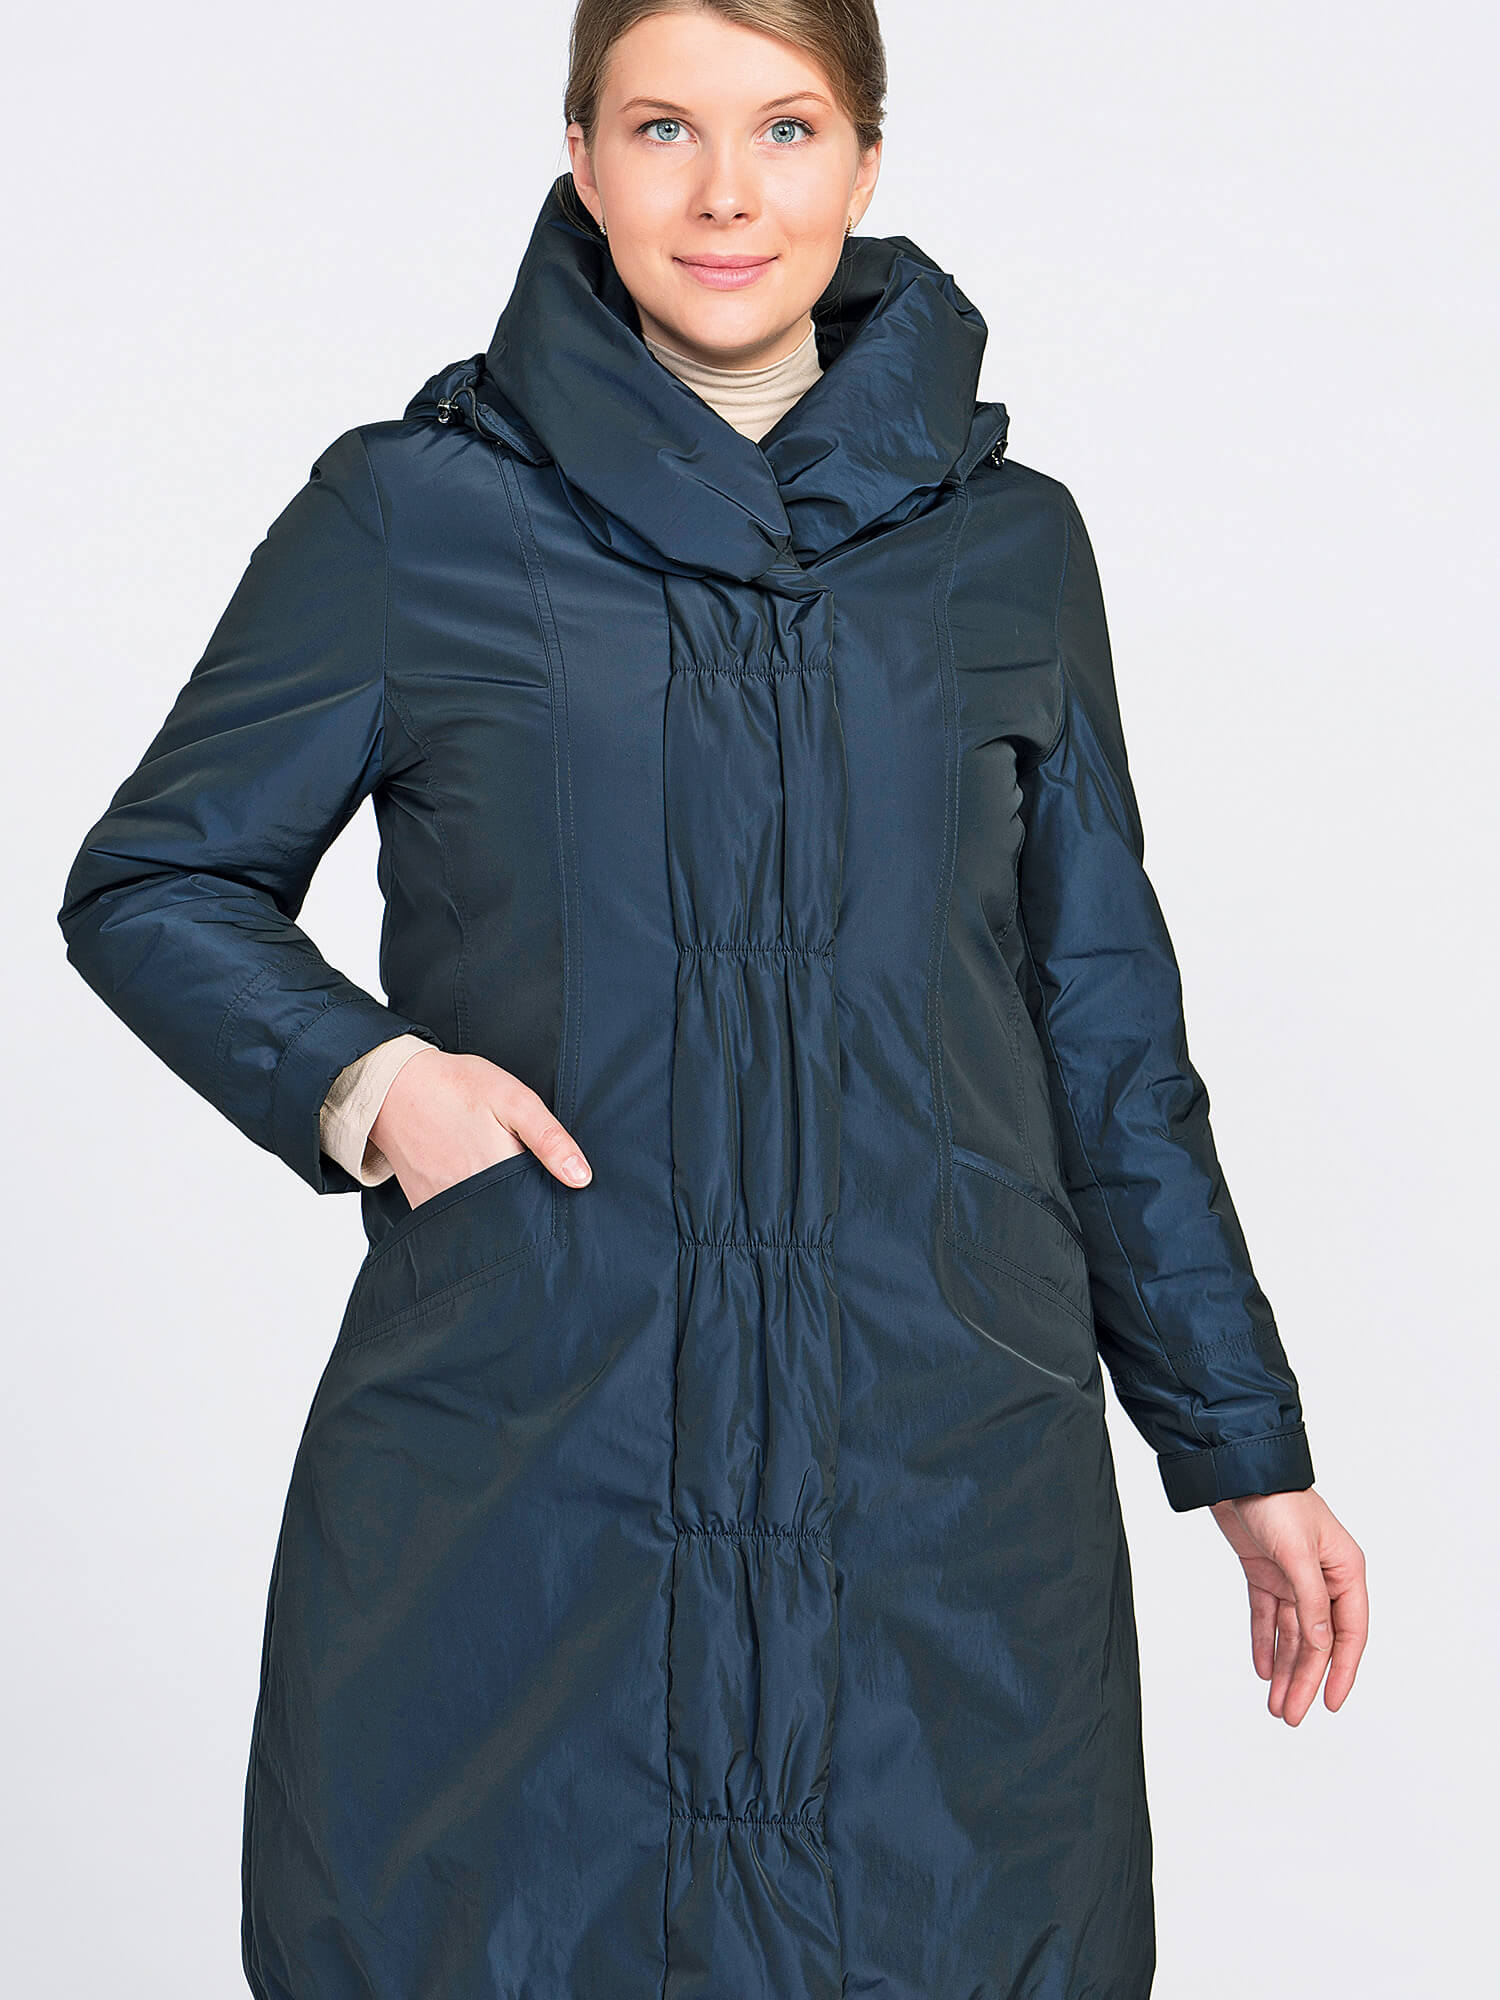 Одежда дикси коат. Пальто Dixi Coat. Пальто финское Dixi Coat. Пальто Dixi Coat 6120-294 (82). Финское пальто для женщин Dixi Coat.